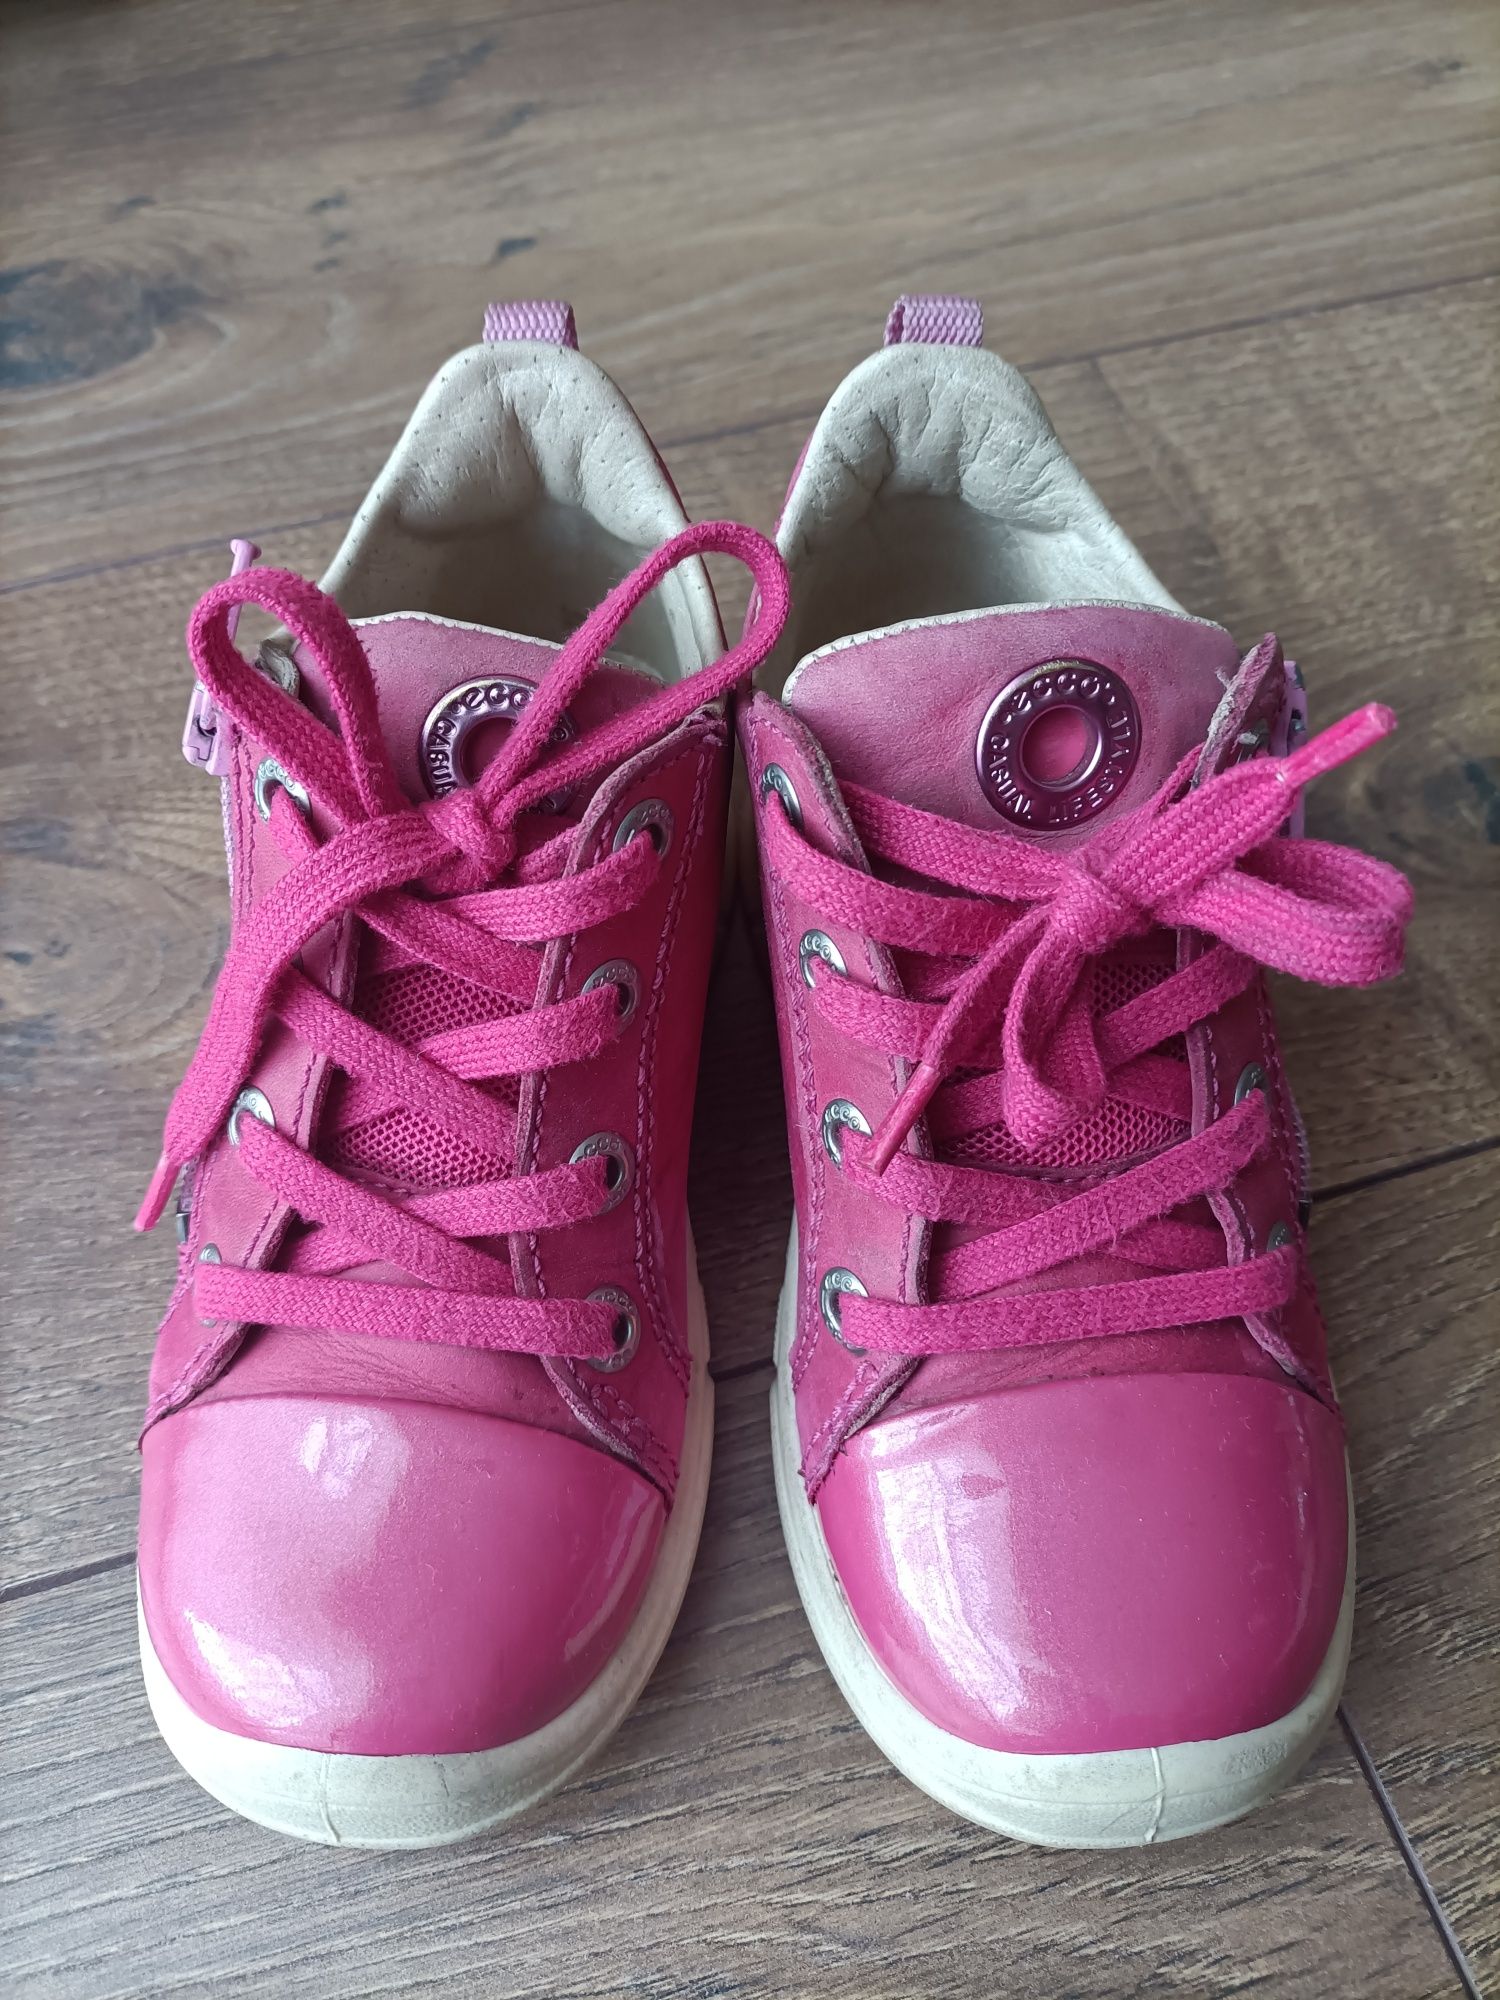 Buty skórzane Ecco, różowe, rozmiar 25, na suwak